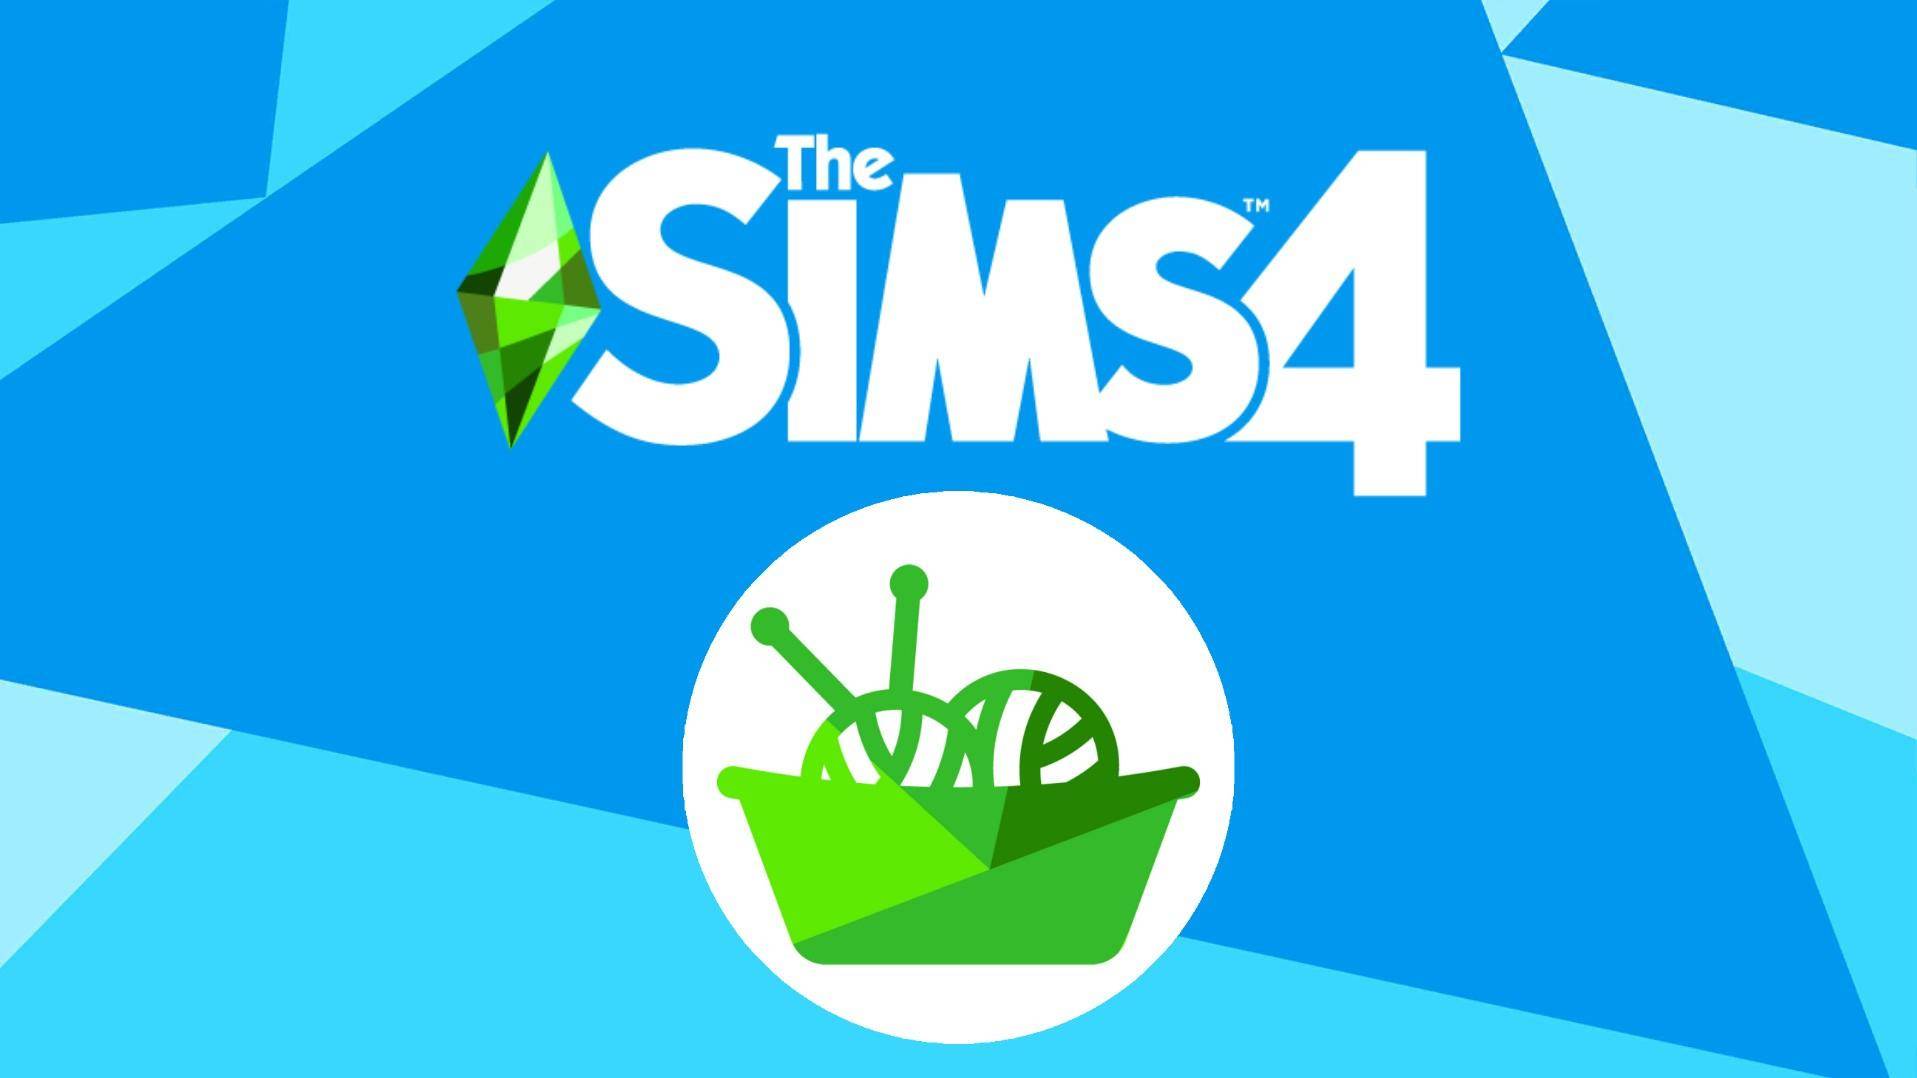 The Sims 4 ujawnia nazwę i ikonę swojego nowego rozszerzenia